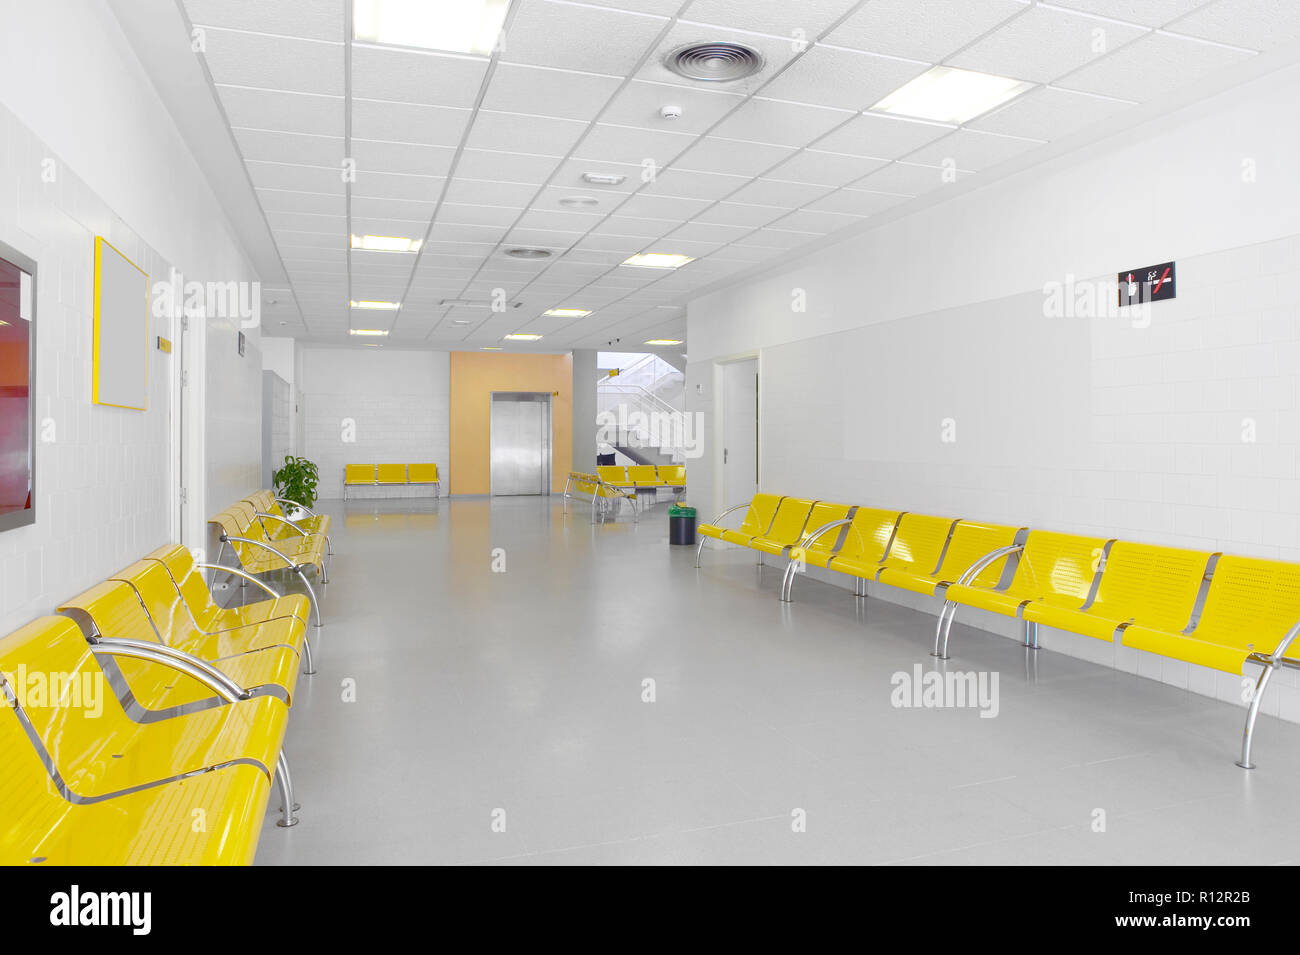 Offentliche Gebaude Warten Krankenhaus Interior Detail